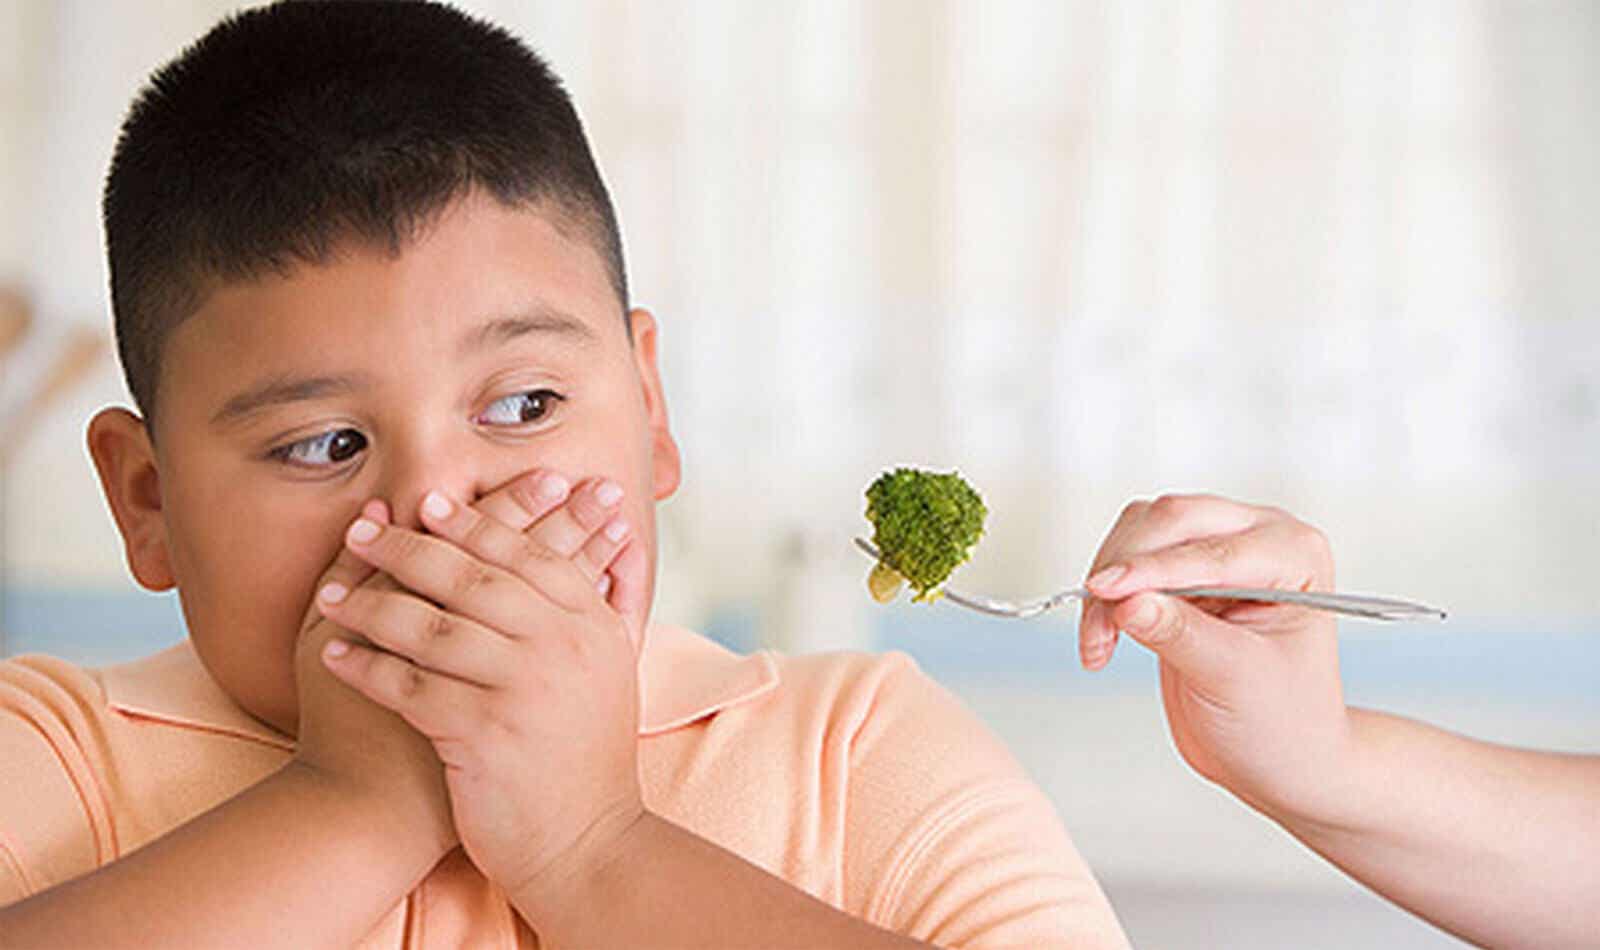 Junge will keinen Brokkoli essen